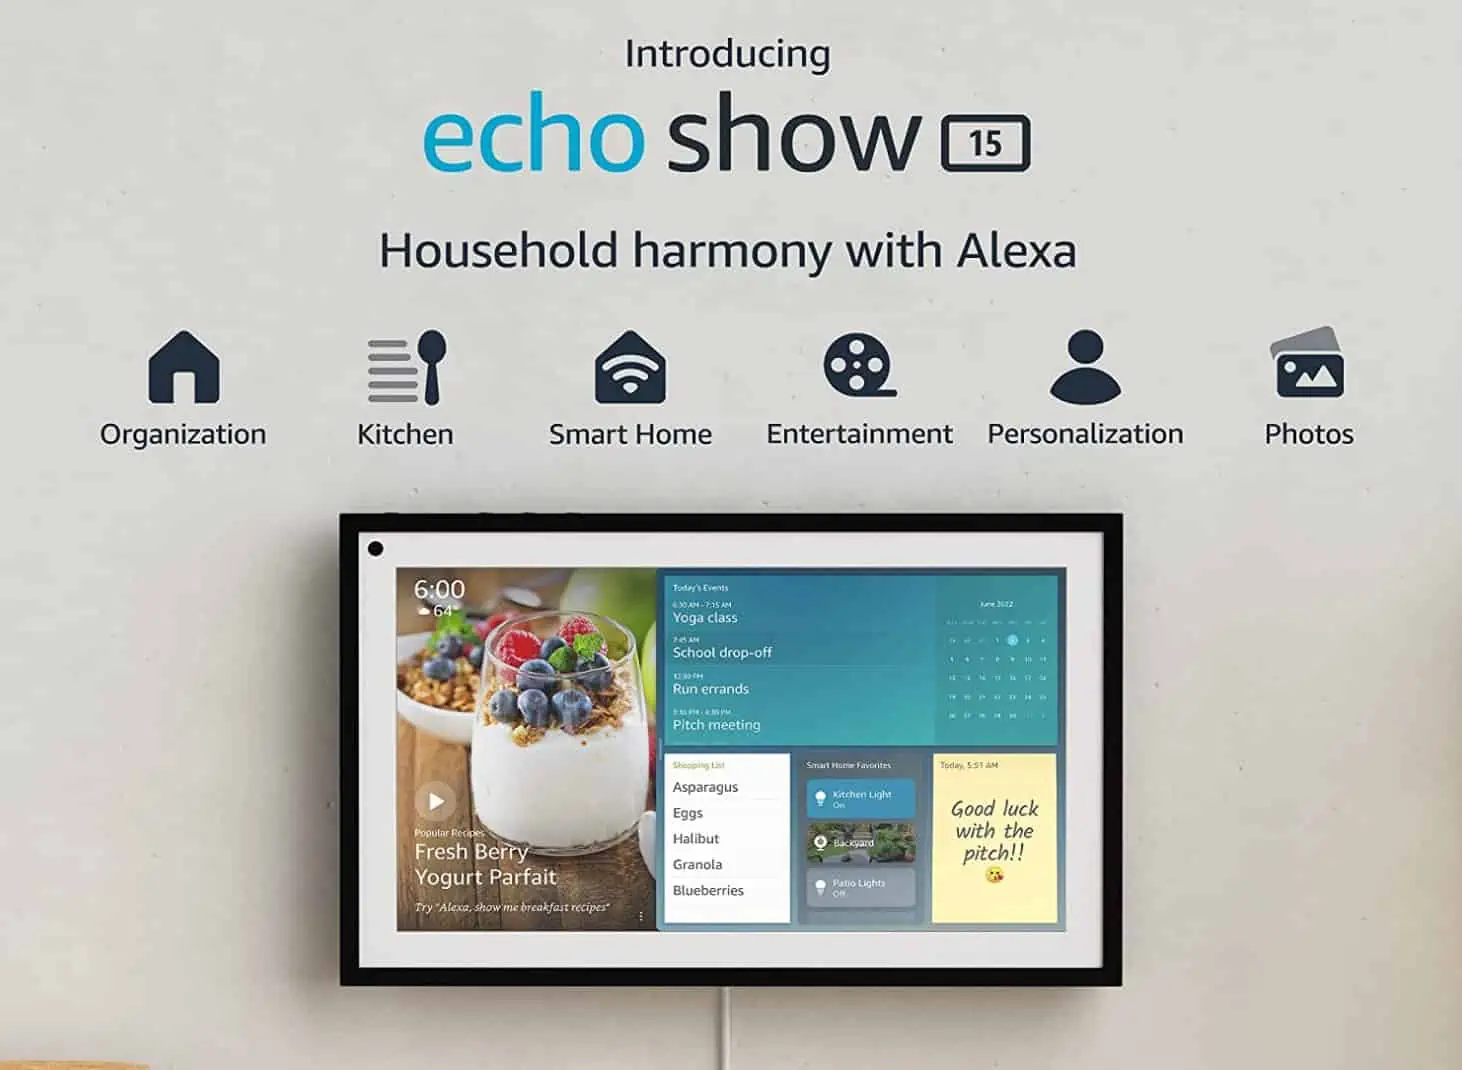 Amazon kündigt Echo Show 15 an, ein 15-Zoll-Smart-Display, das von Alexa betrieben wird